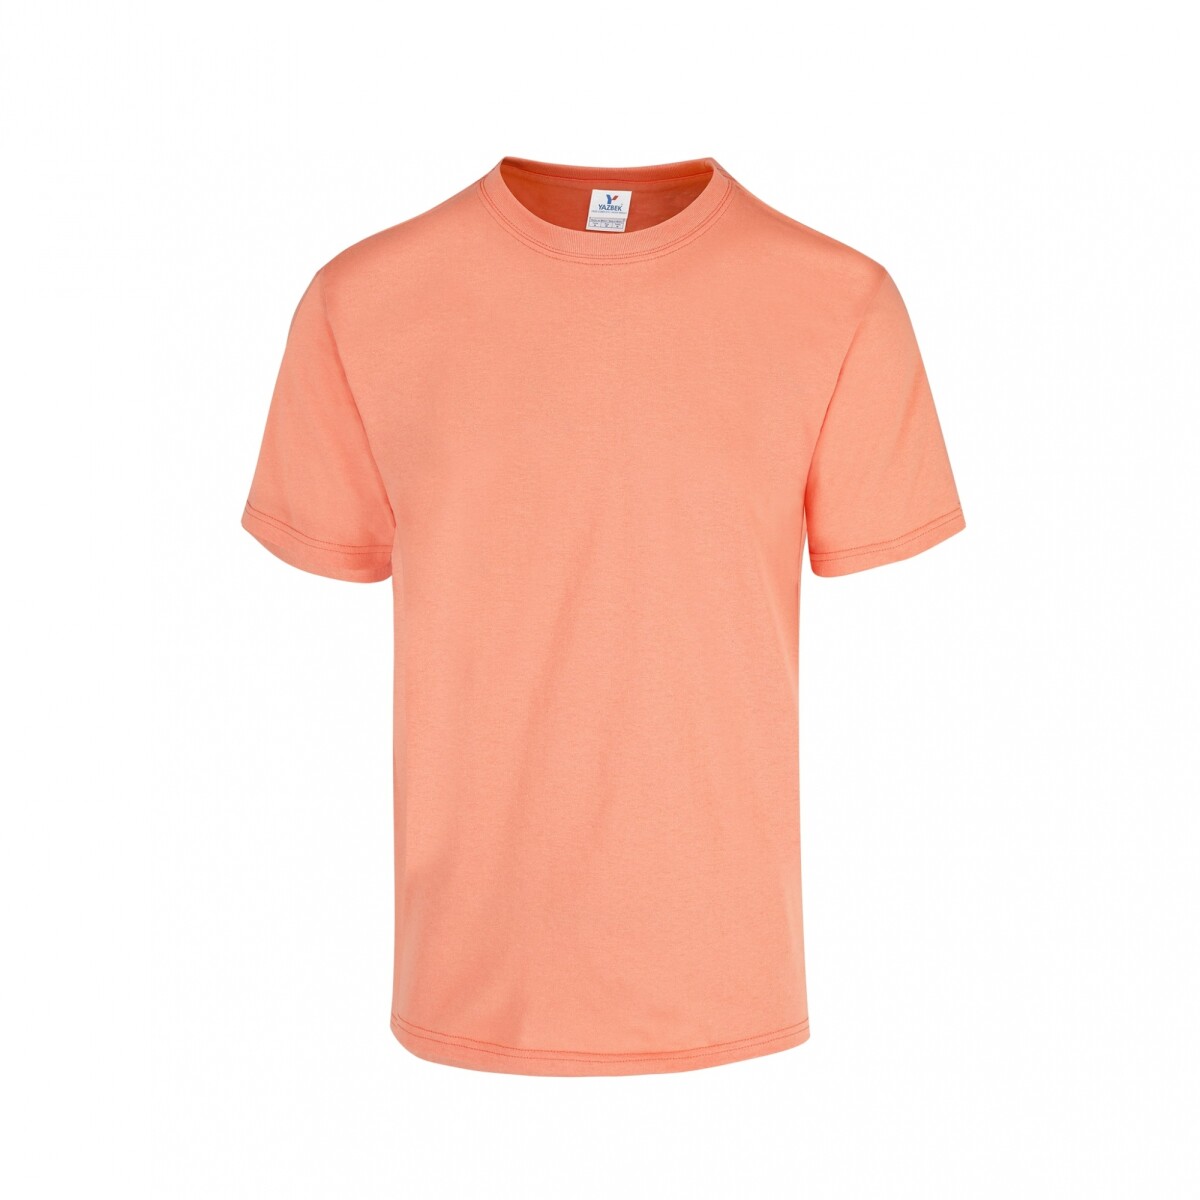 Camiseta a la base peso completo - Coral 